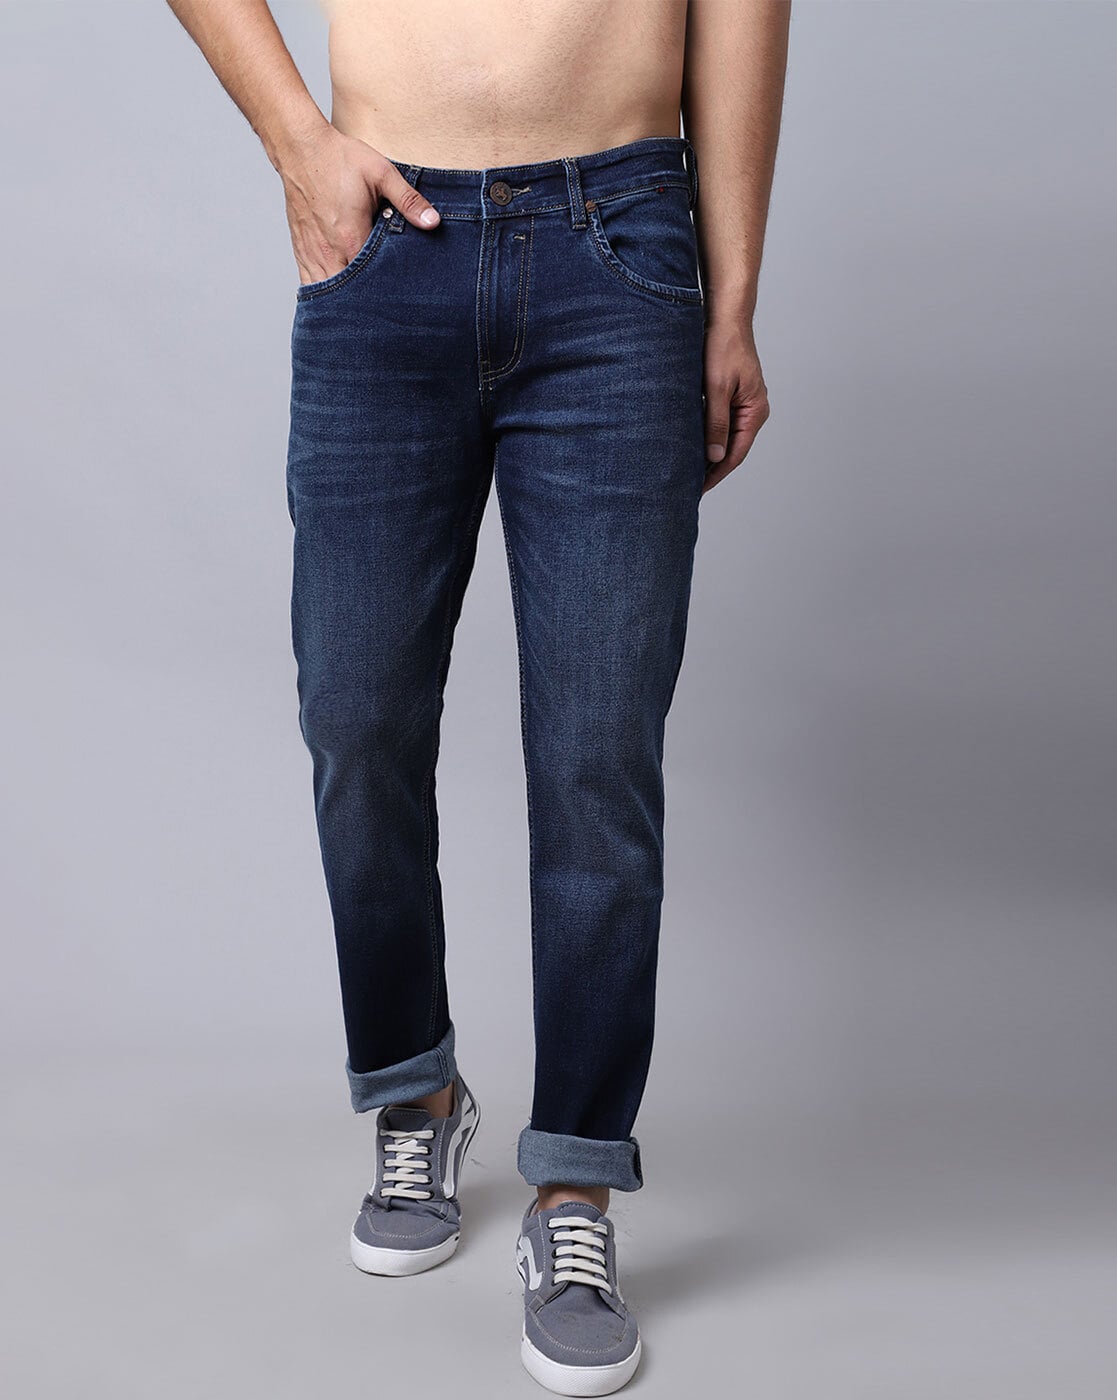 Women's Denim Jeans Fashion High Waist Striaght Leg Long Pants Boyfriend  Casual Comfy Jeans Regular Fit Blue / Black / Light Blue Pants(L,Black) -  Walmart.com